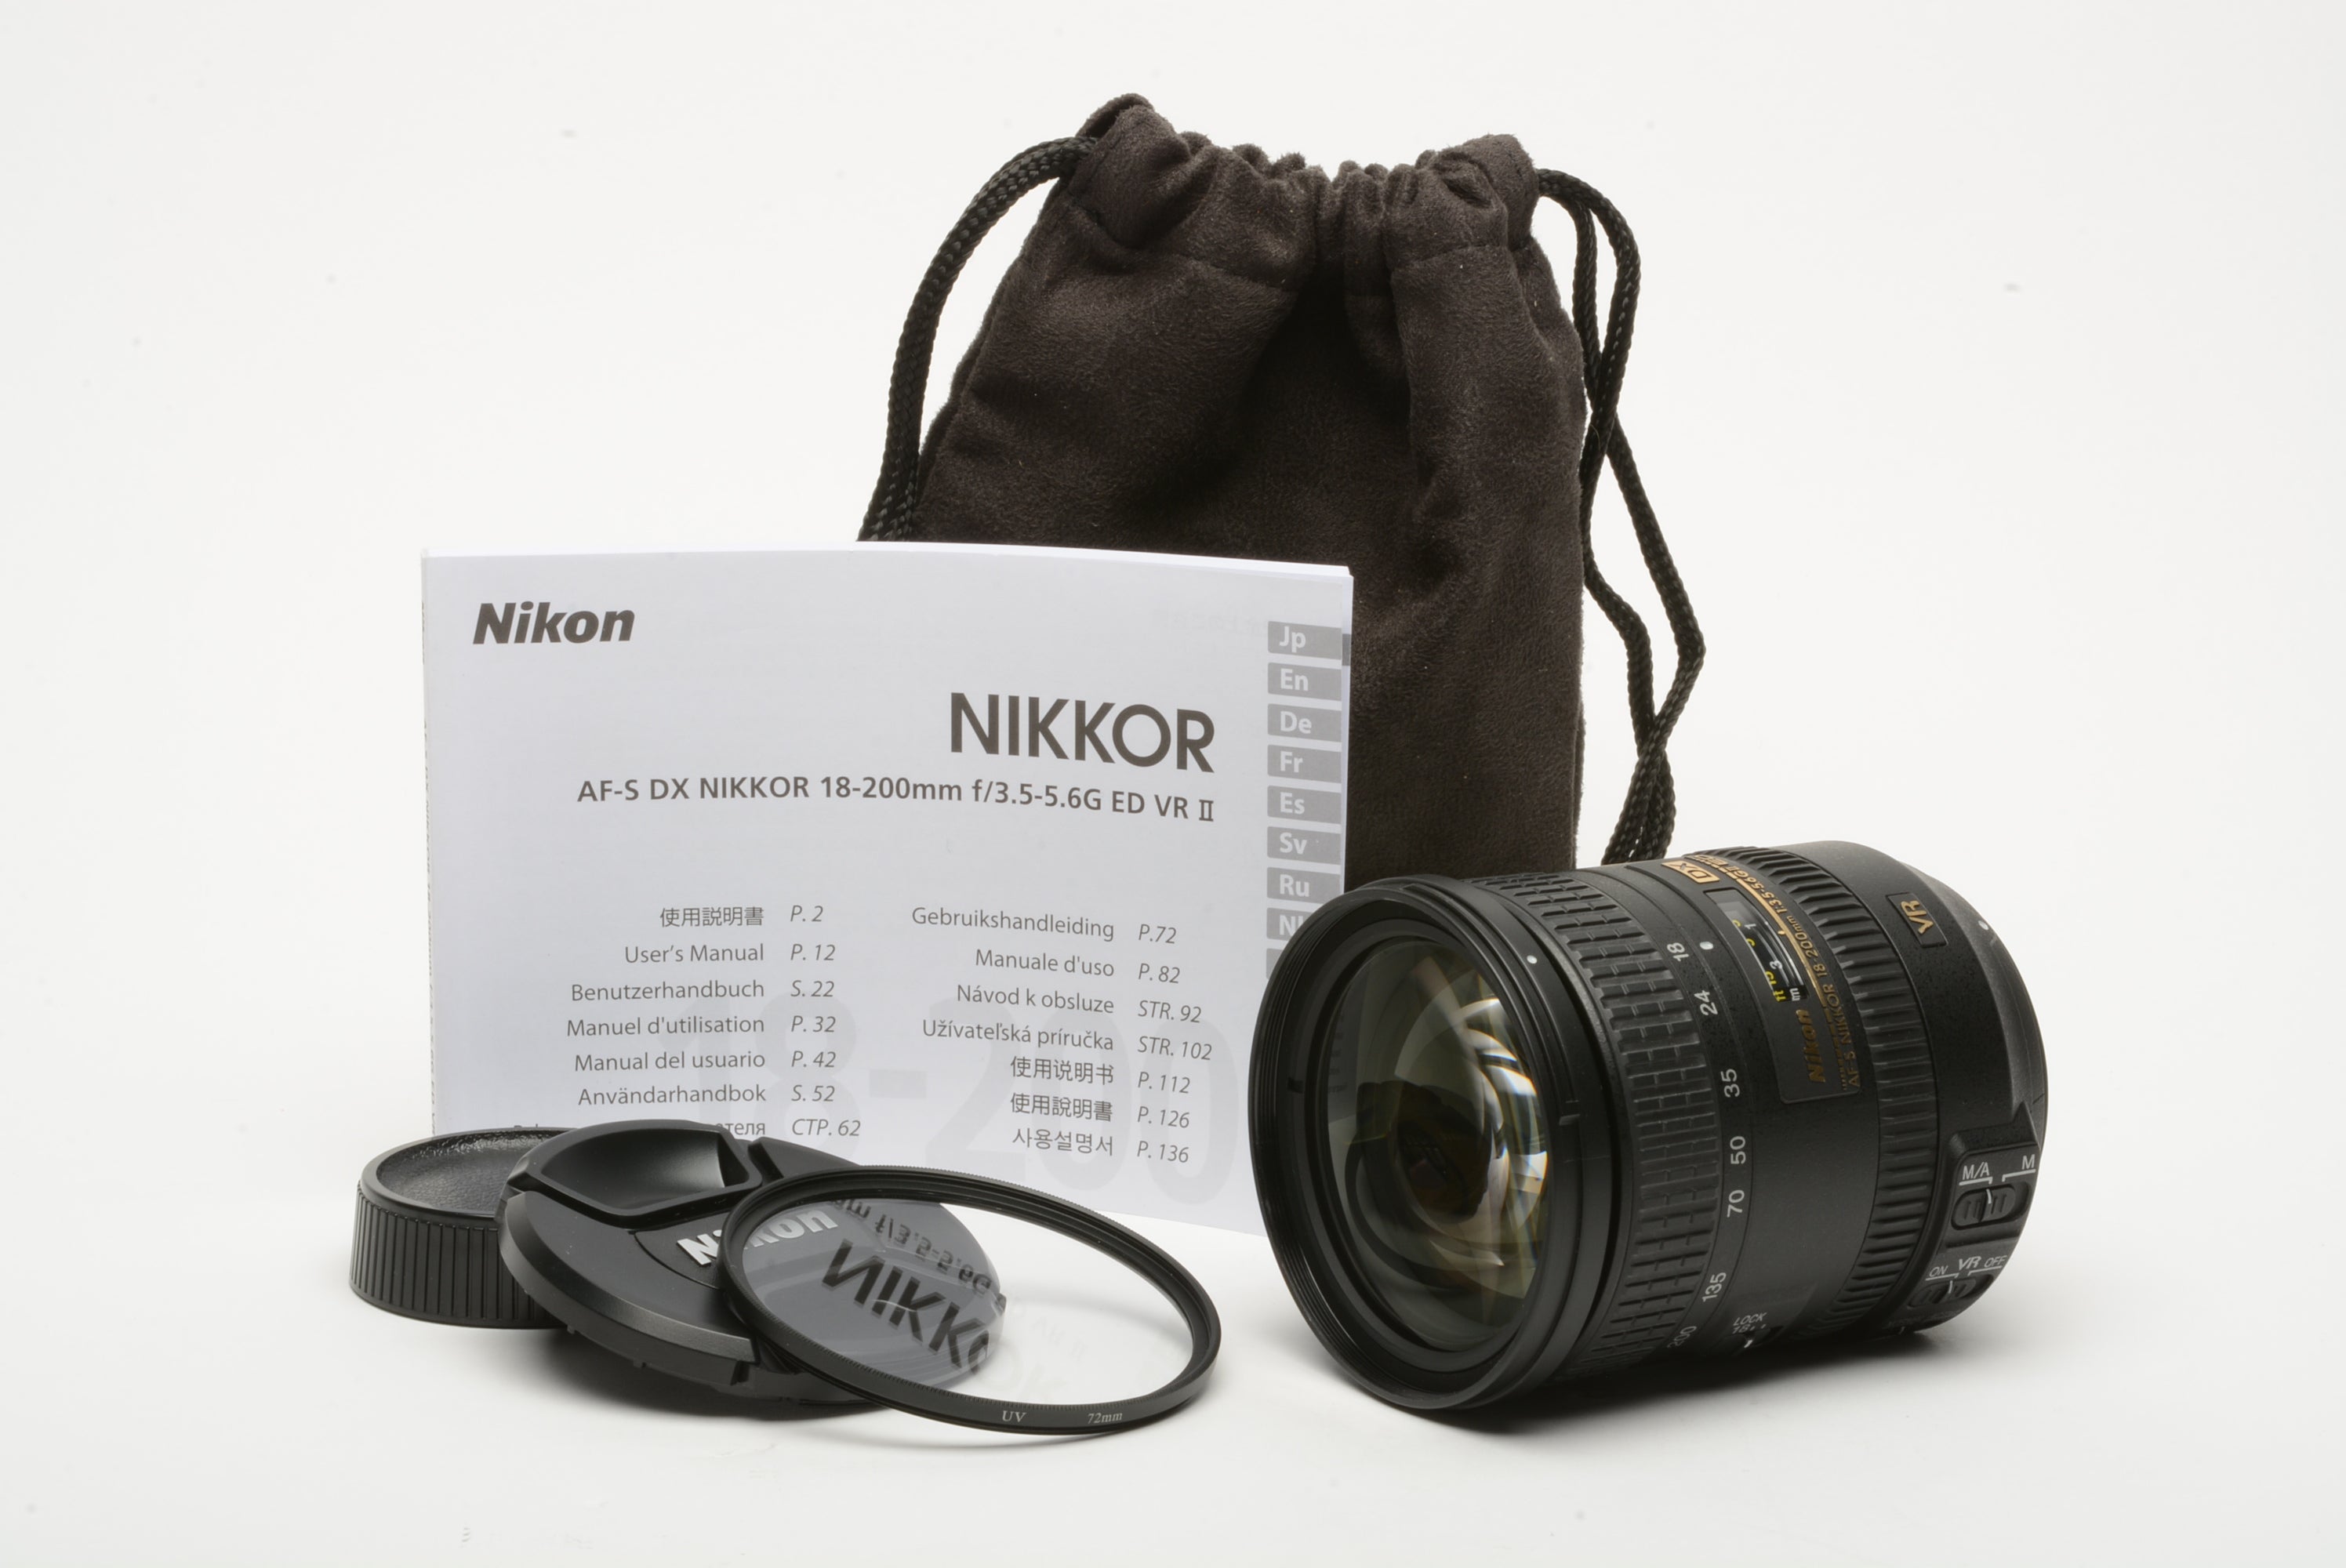 Nikon AF-S Nikkor 18-200mm f3.5-5.6G ED II Ed VR DX zoom lens